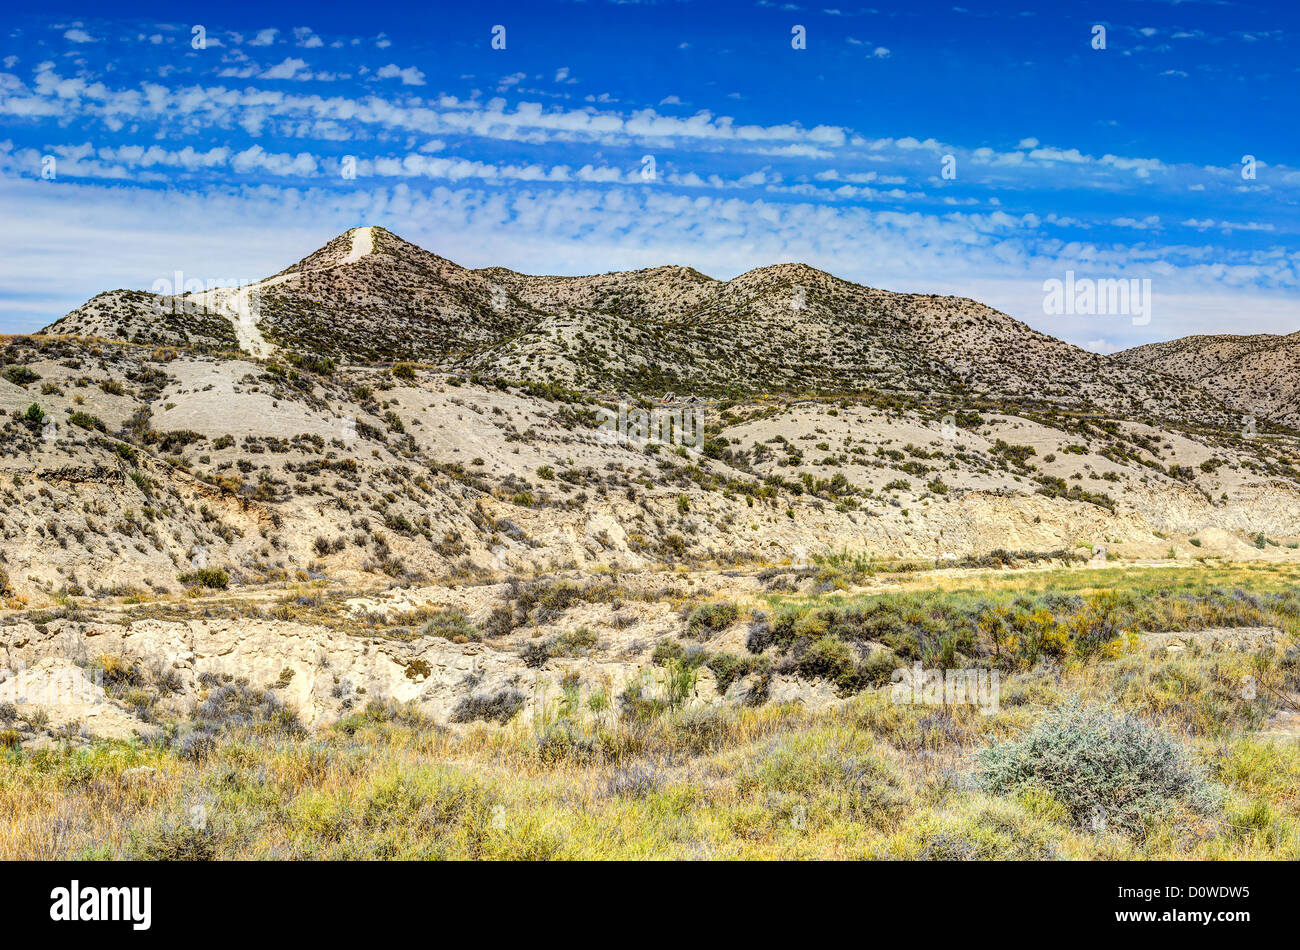 Paysage désertique - Mongeros, Aragon, Espagne Banque D'Images